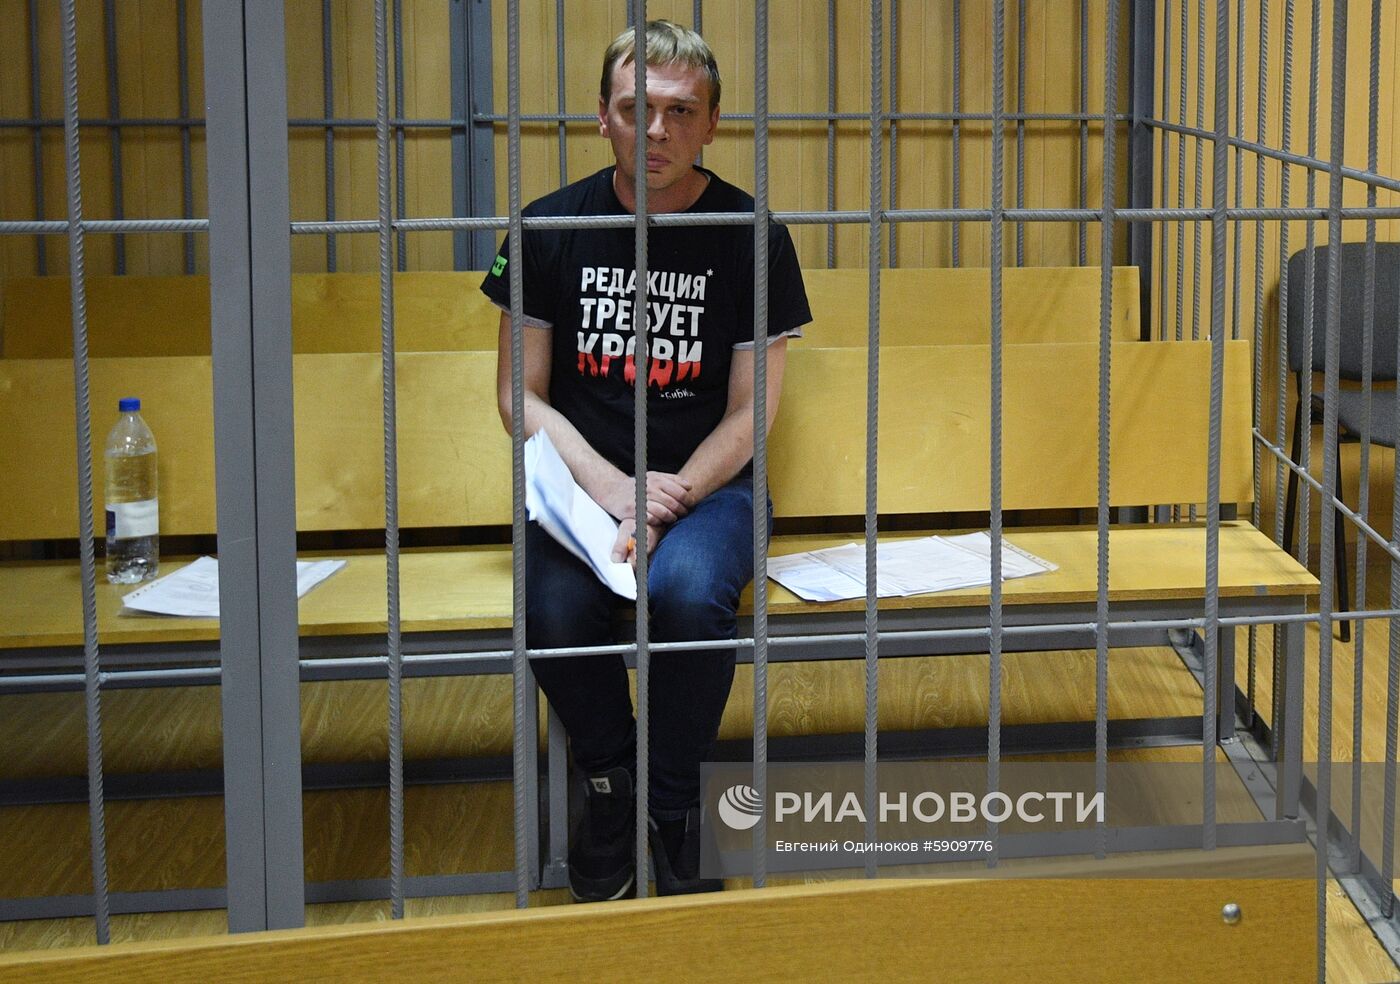 Избрание меры пресечения журналисту И. Голунову